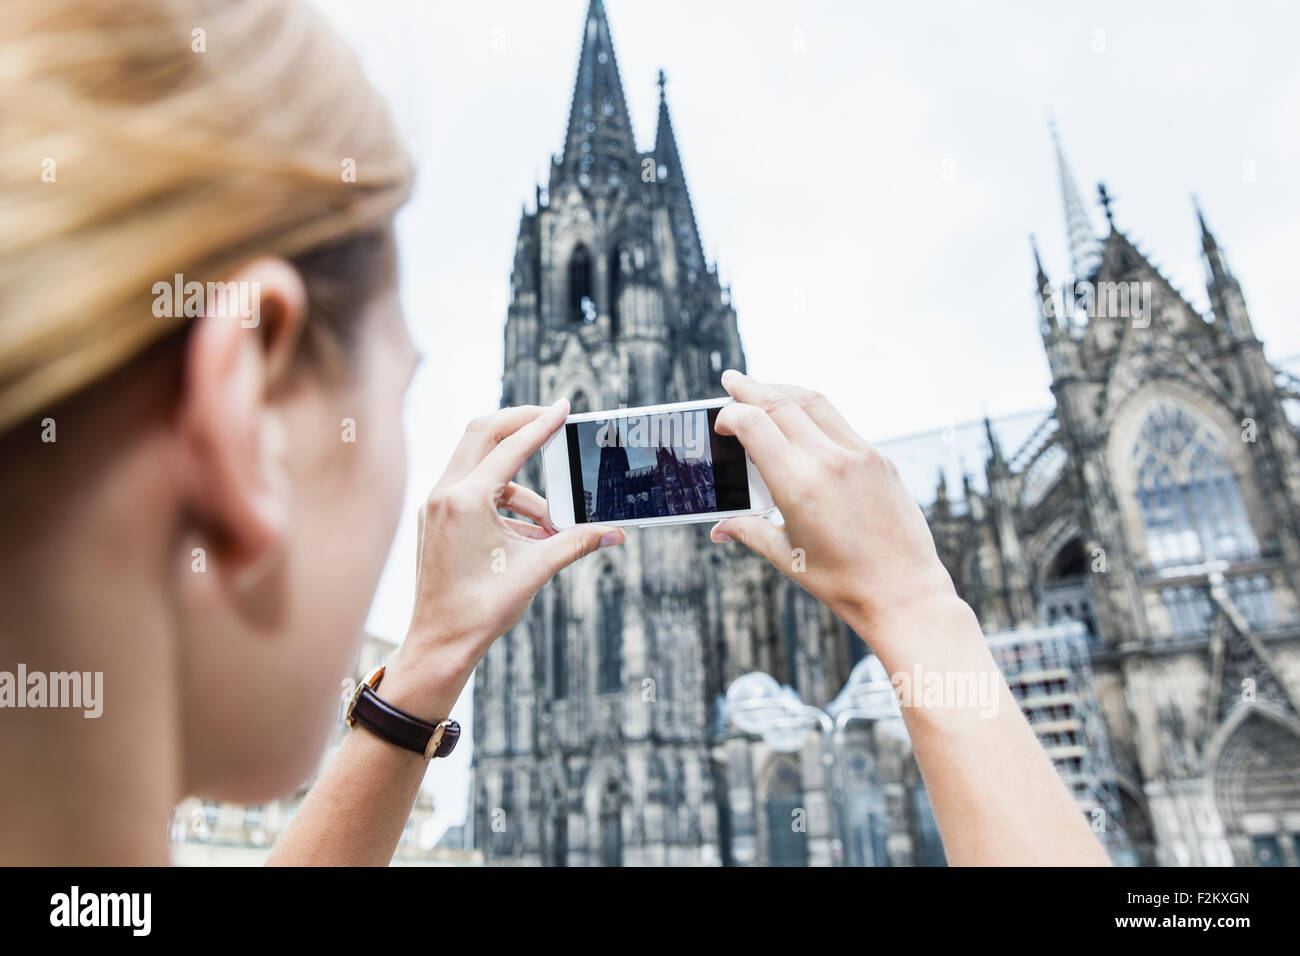 Germania, Colonia, giovane donna di scattare una foto della Cattedrale di Colonia con lo smartphone Foto Stock